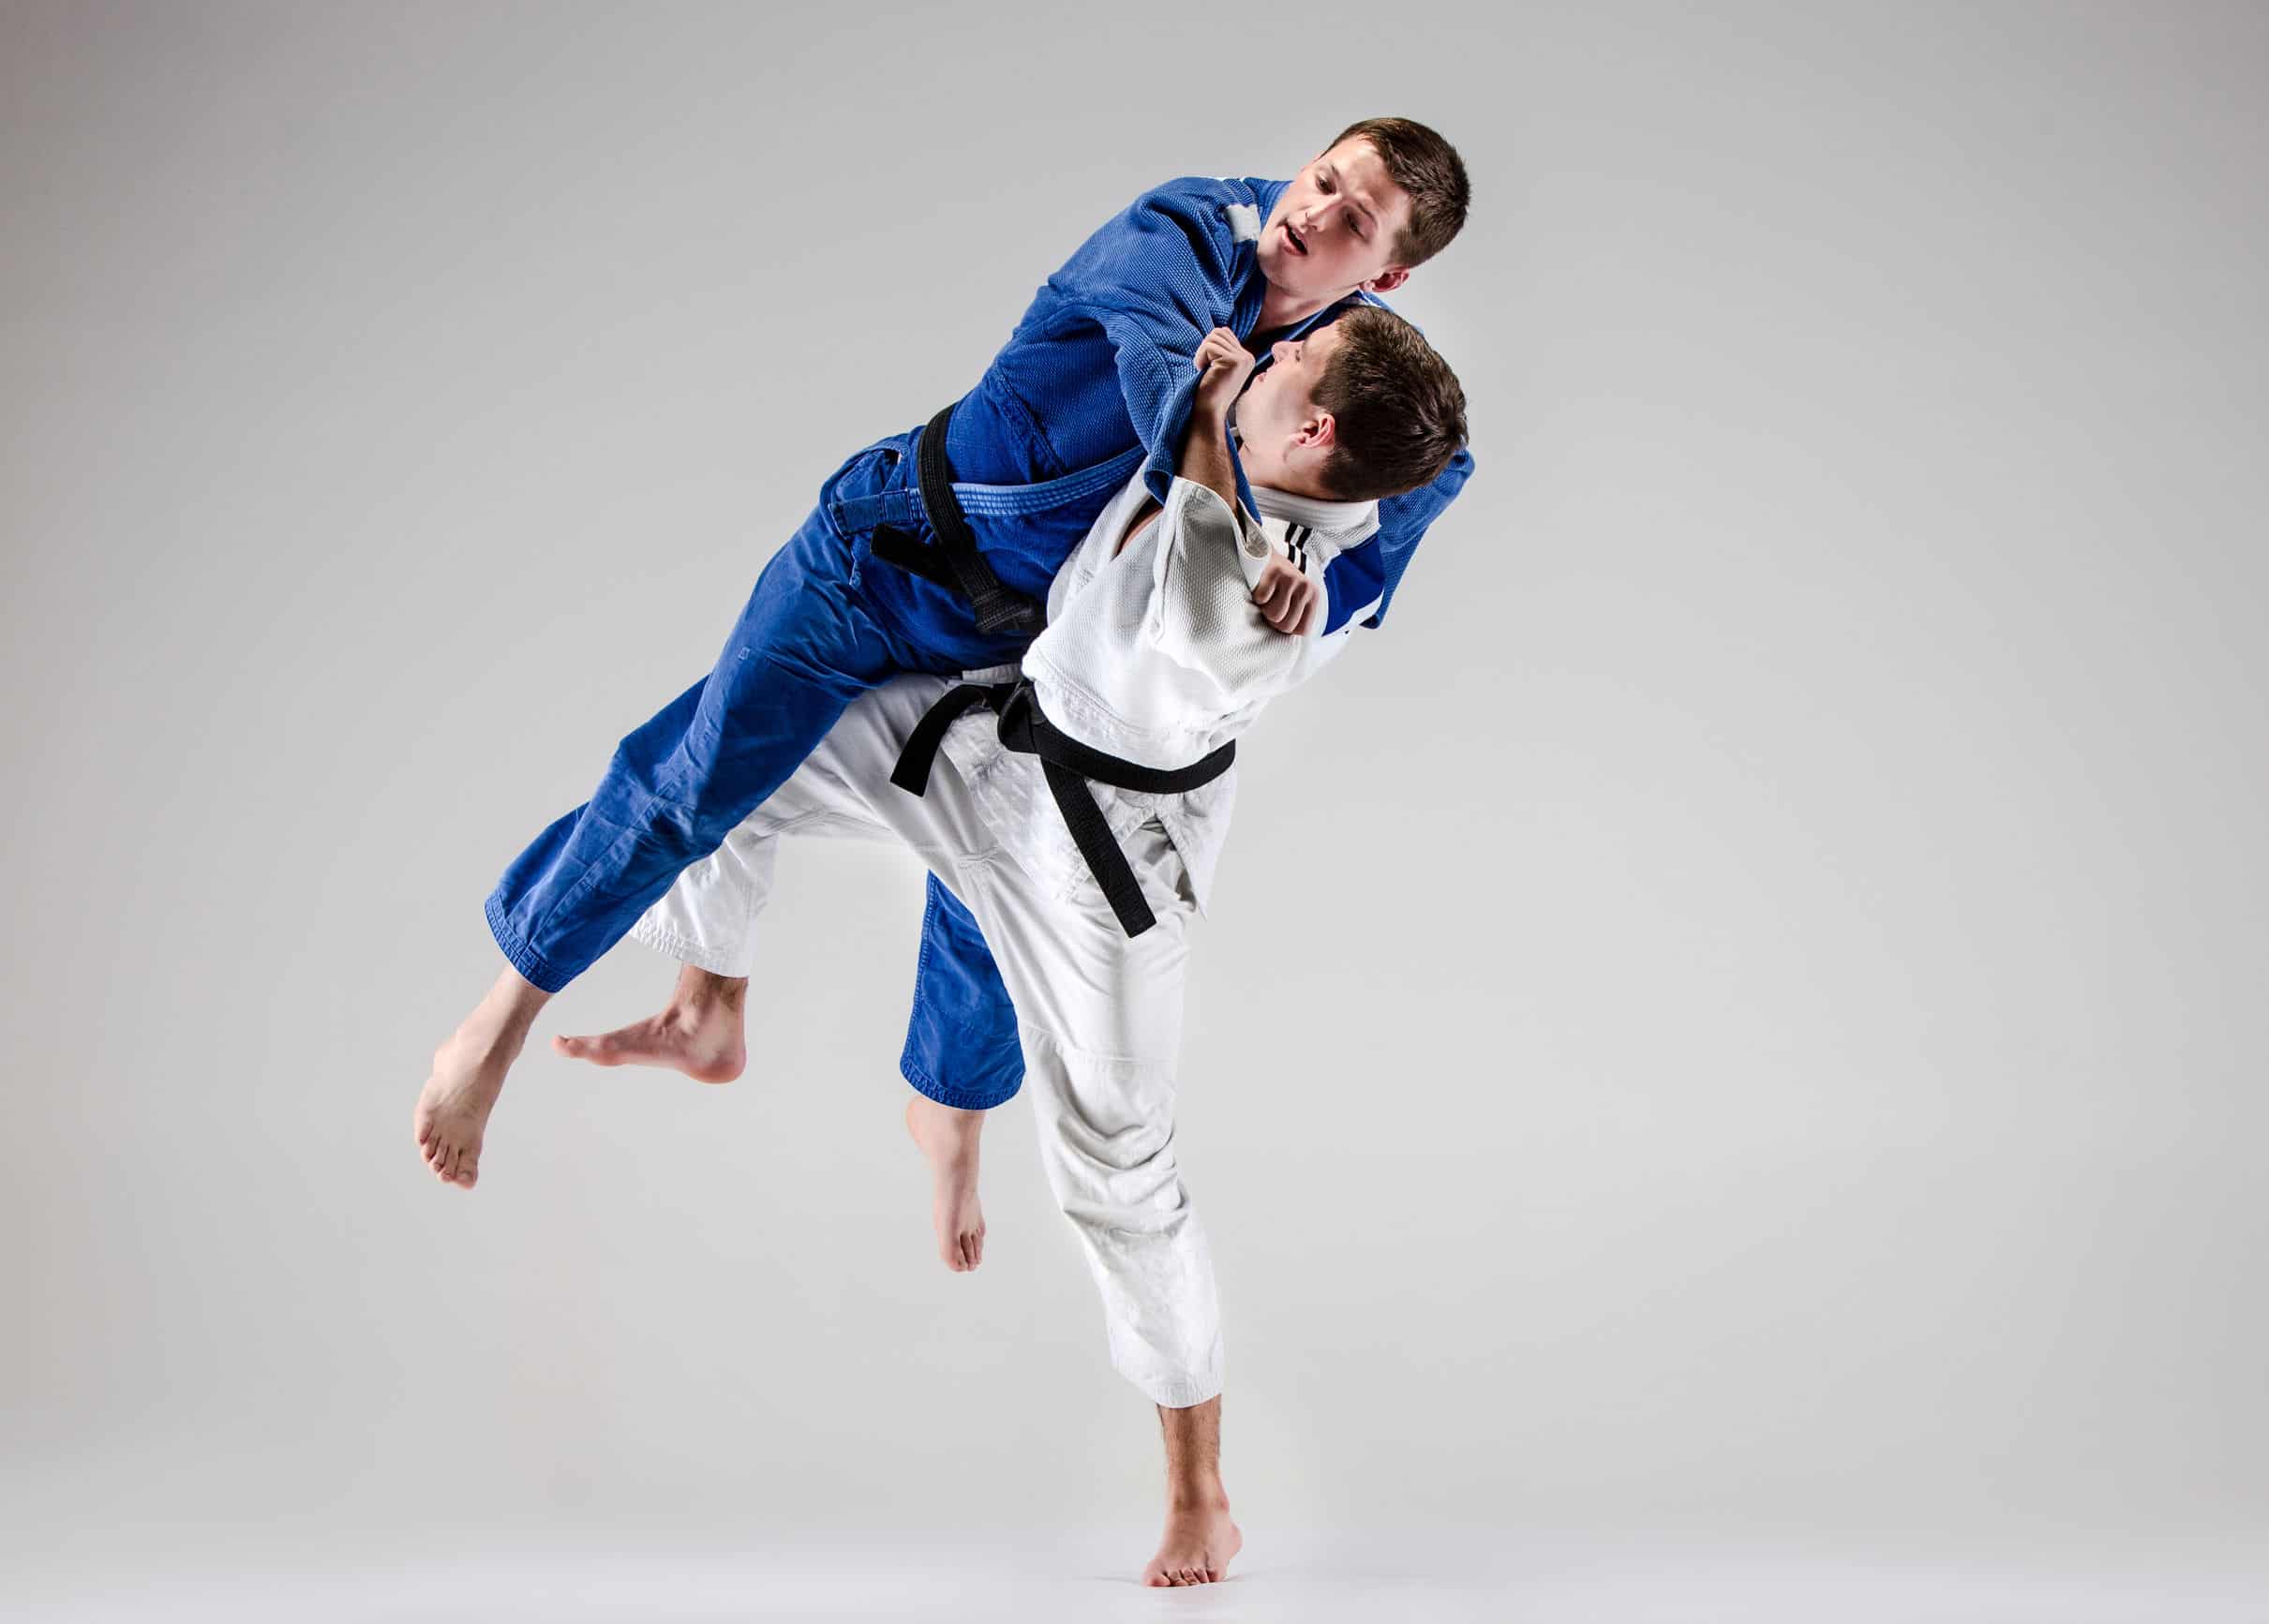 La taille compte-t-elle dans le judo ?  La vérité sur la taille en judo